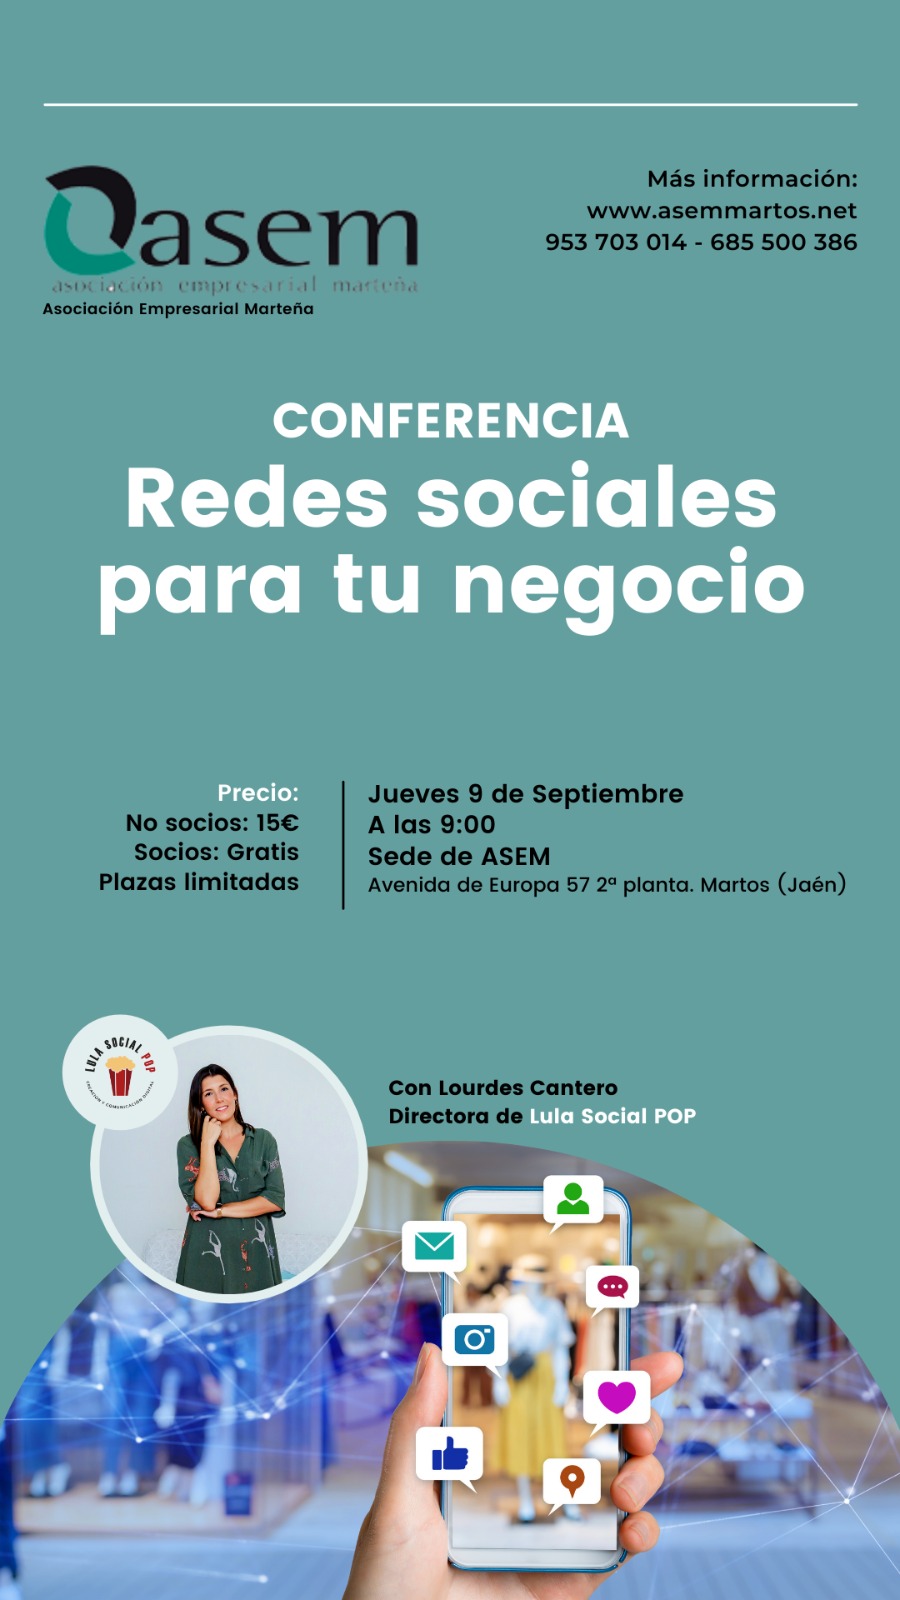 ASEM organiza la conferencia formativa “REDES SOCIALES PARA TU NEGOCIO”